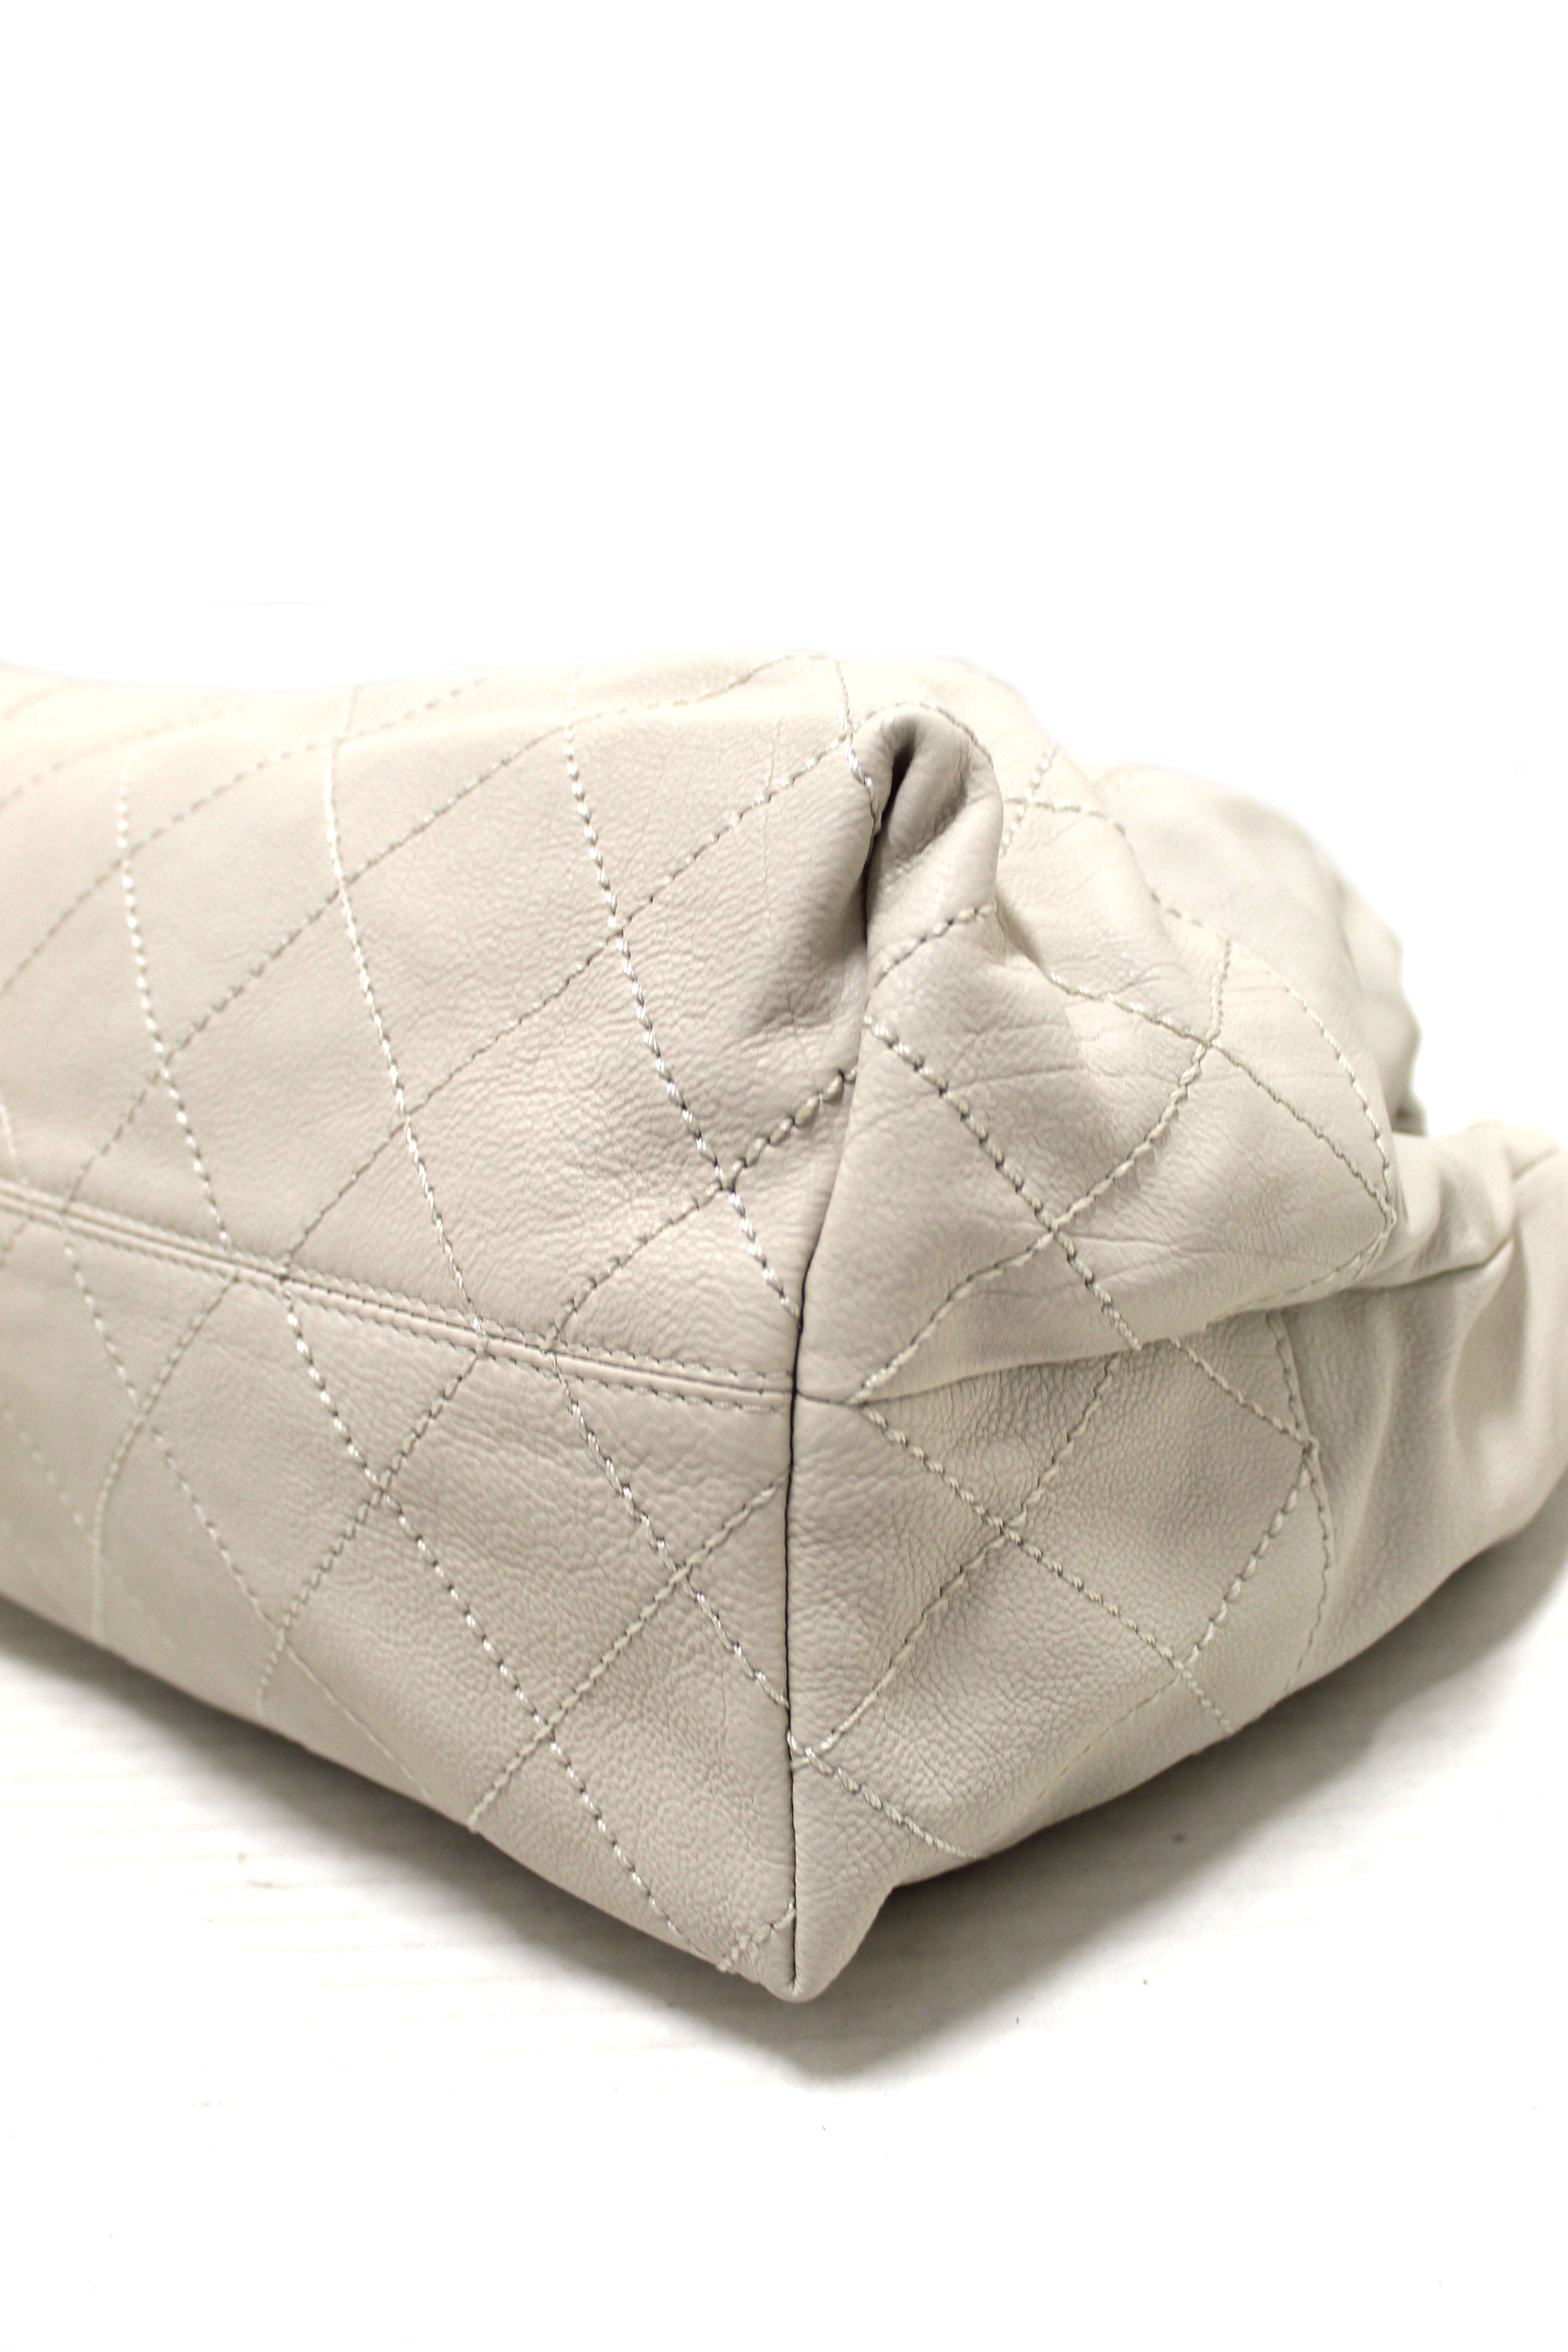 Chanel Coco Cabas Shoulder Tote Bag